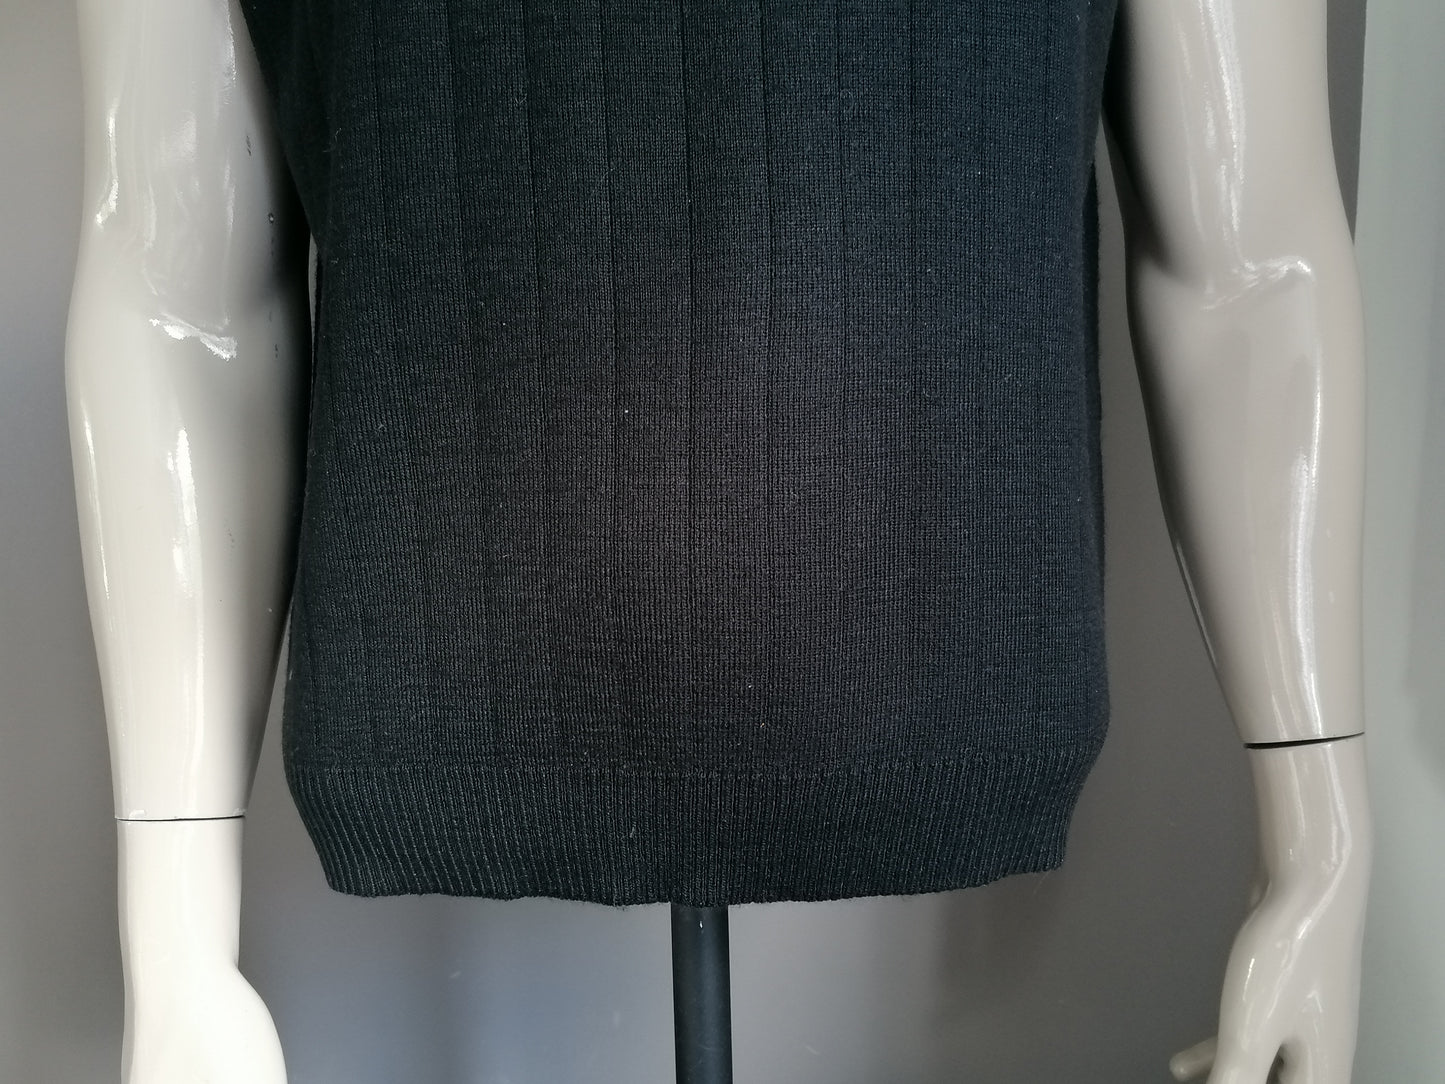 Vintage lerros merino wool spencer. Black motif. Size XL.